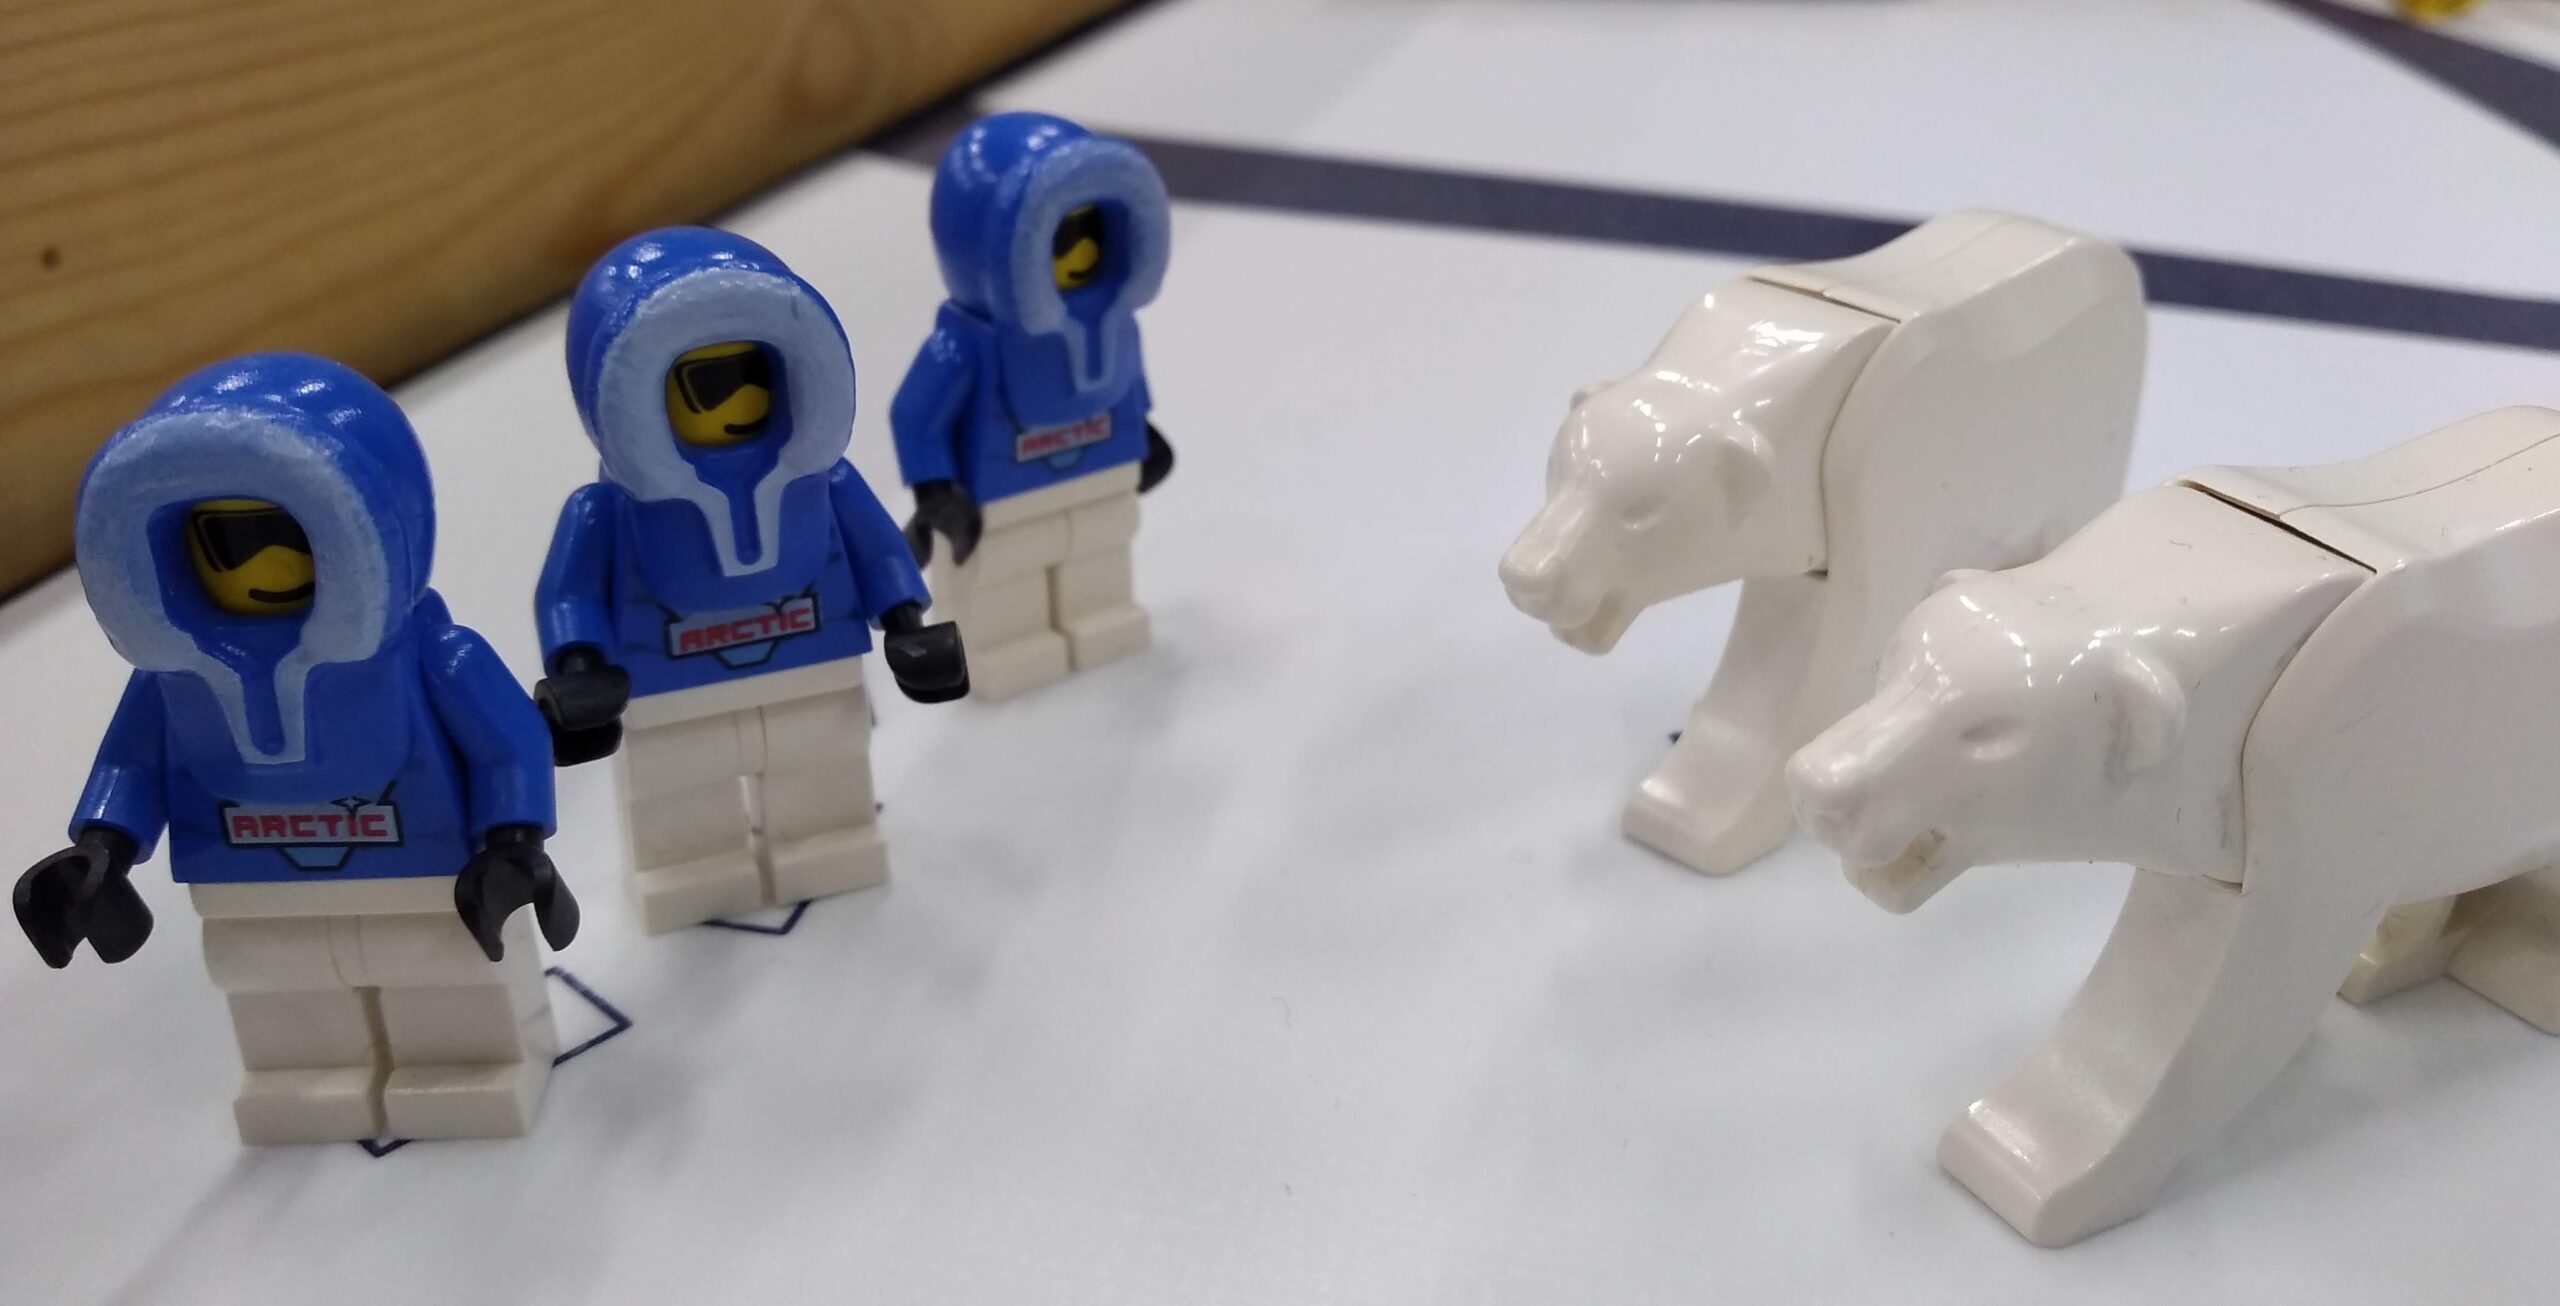 Ideation workshop on Robotics using LEGO Kits